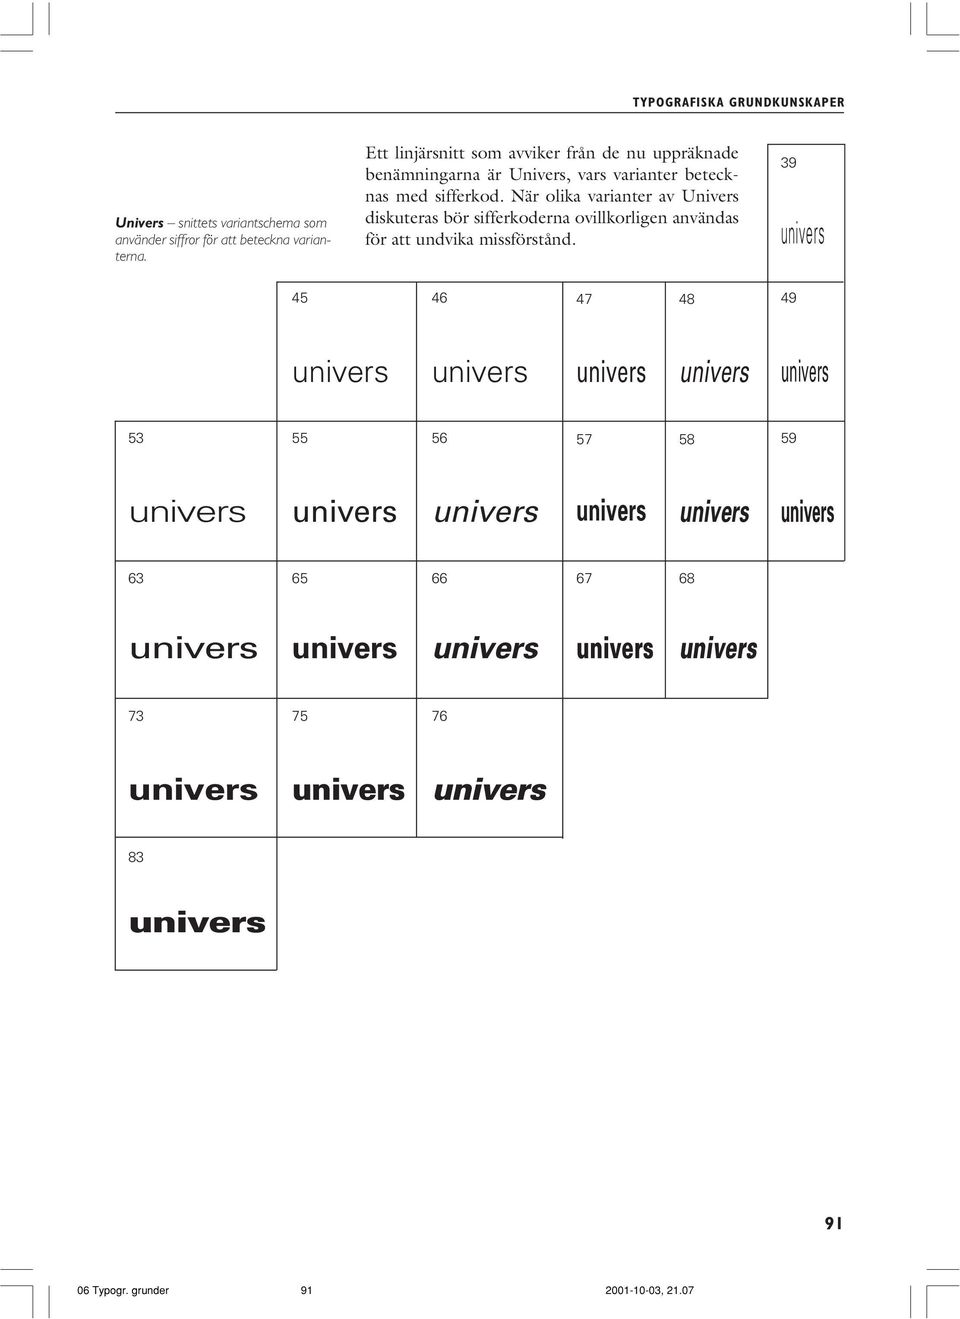 När olika varianter av Univers diskuteras bör sifferkoderna ovillkorligen användas för att undvika missförstånd.